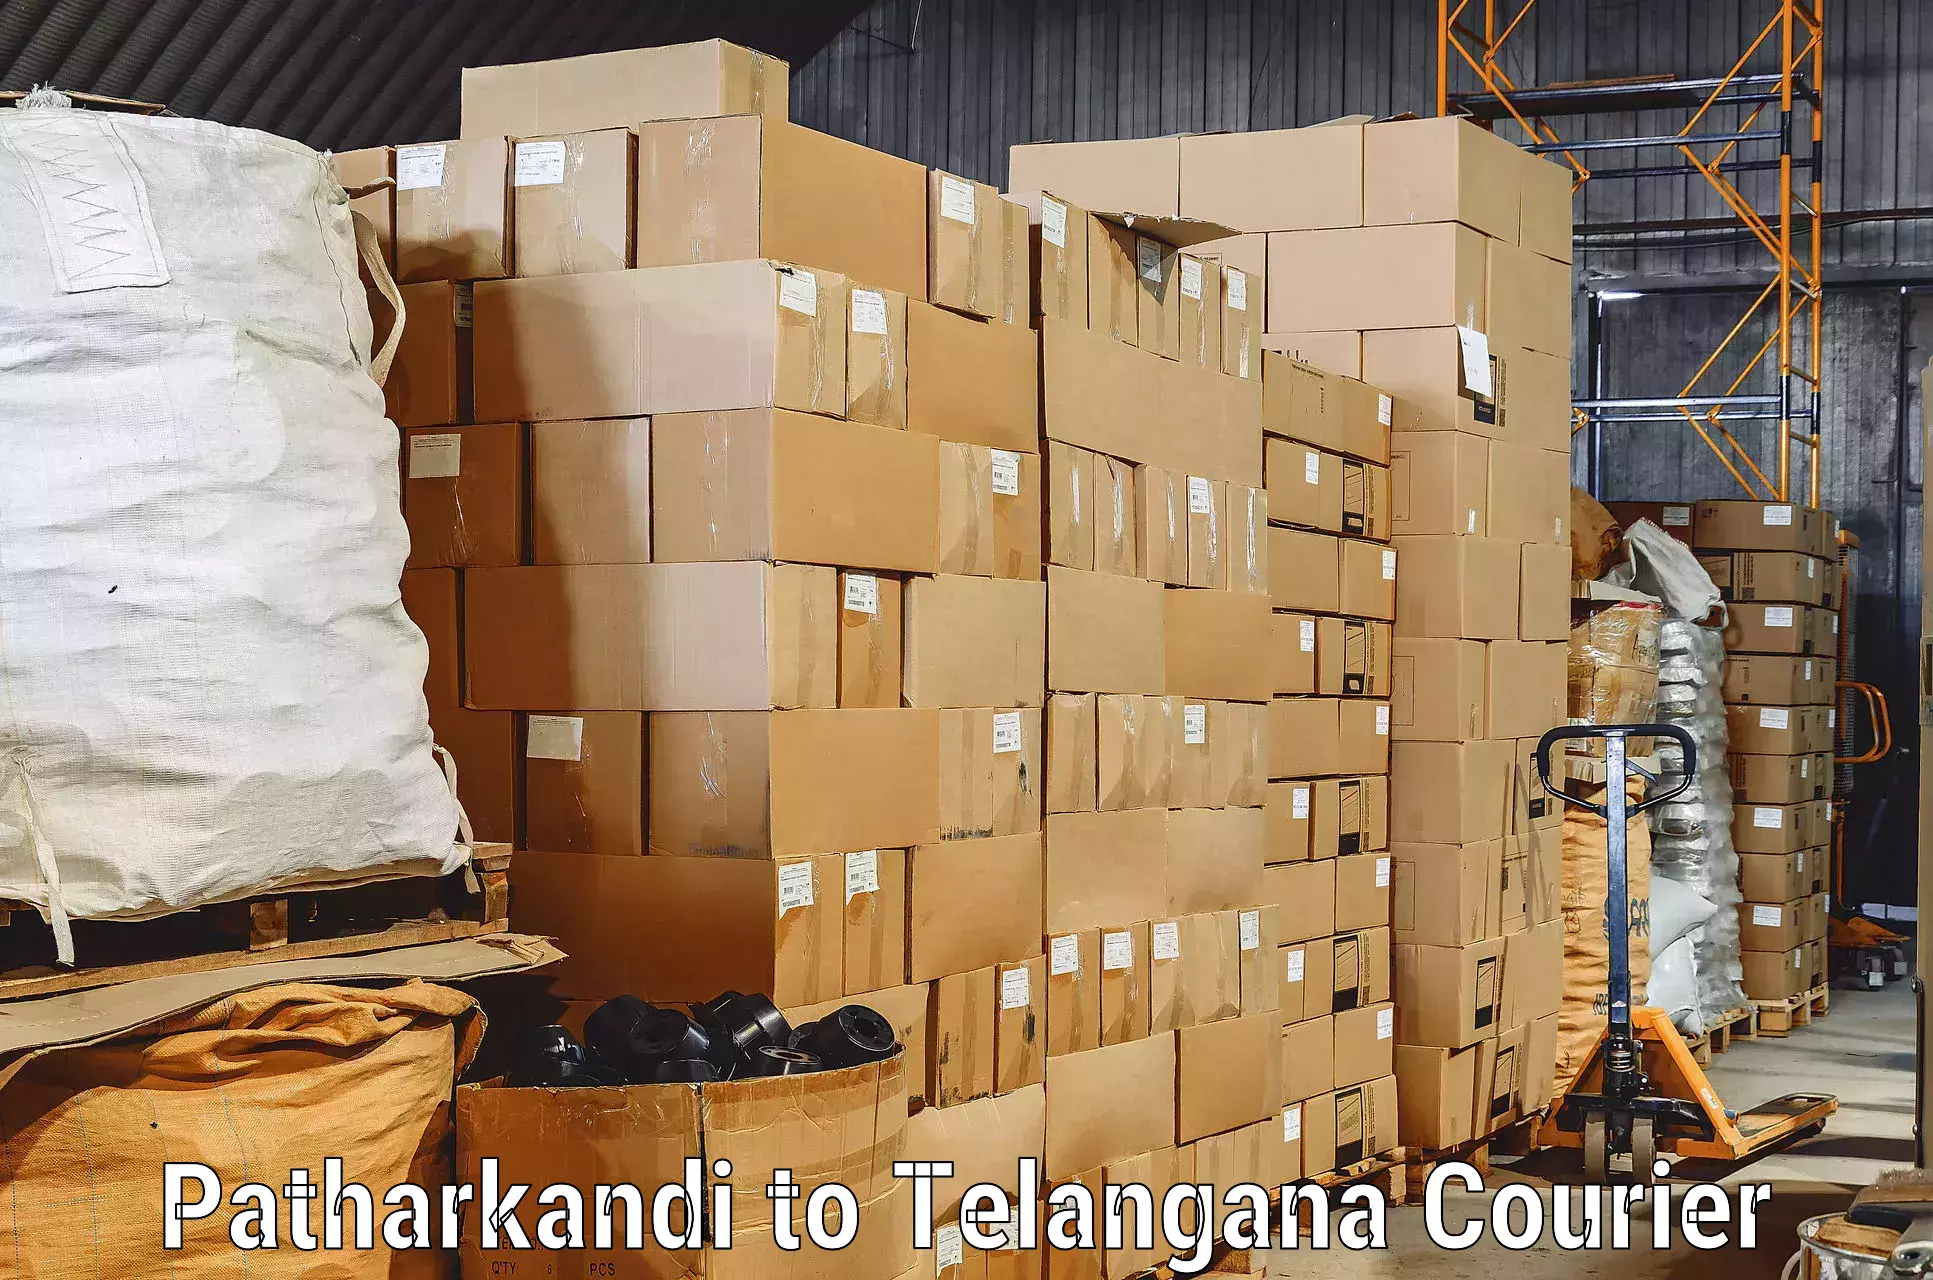 Skilled furniture movers Patharkandi to Yellandu